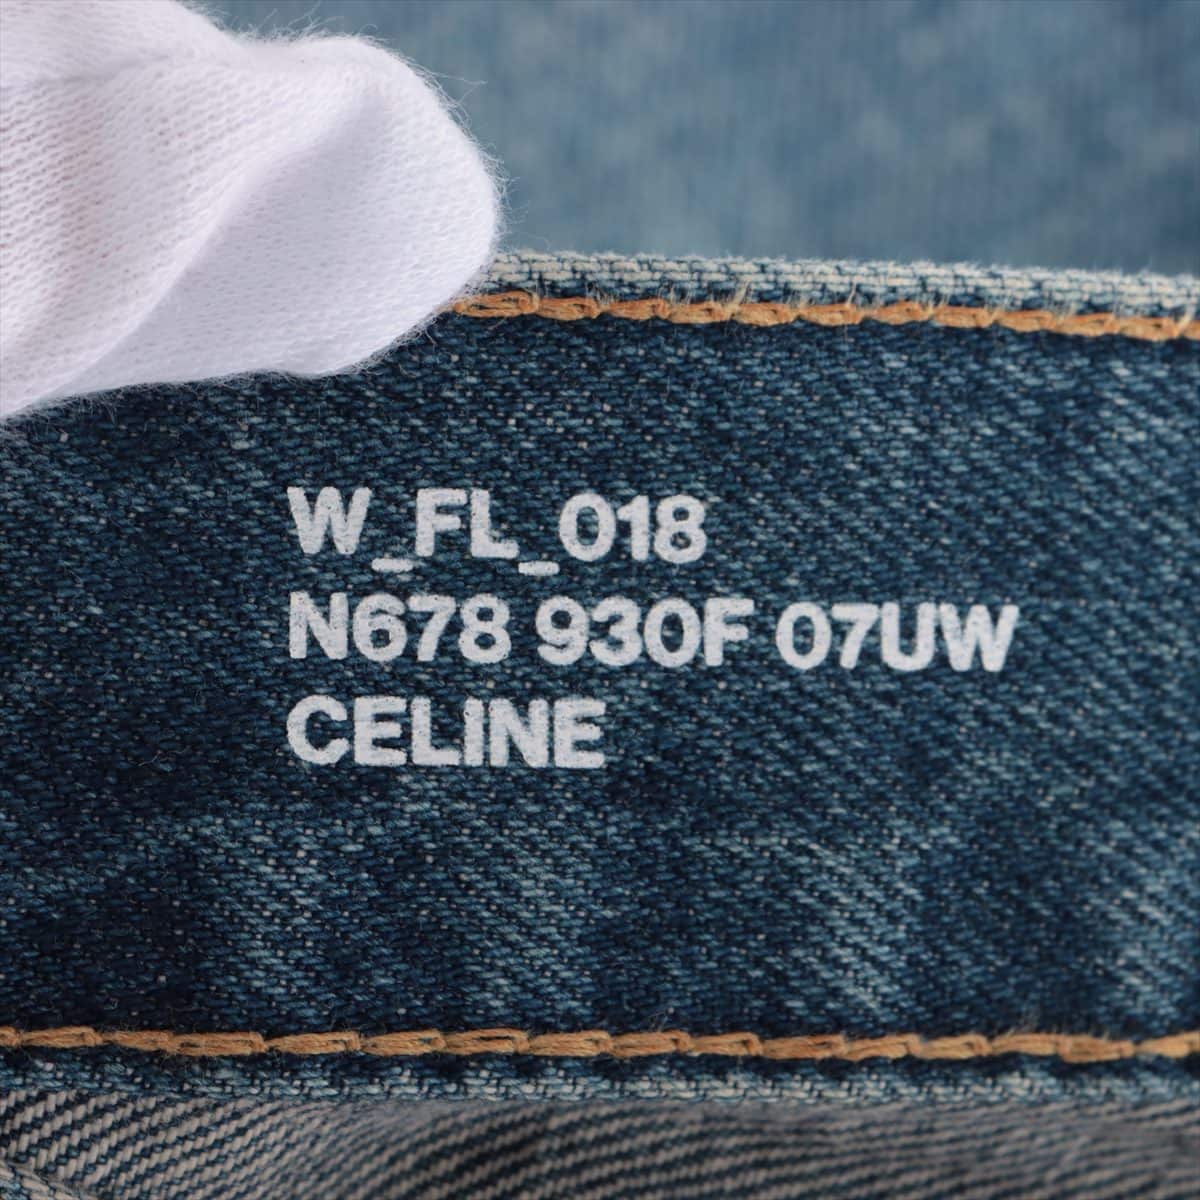 CELINE Triomphe Cotton Denim pants 28 Ladies' Blue  Damage processing Chain